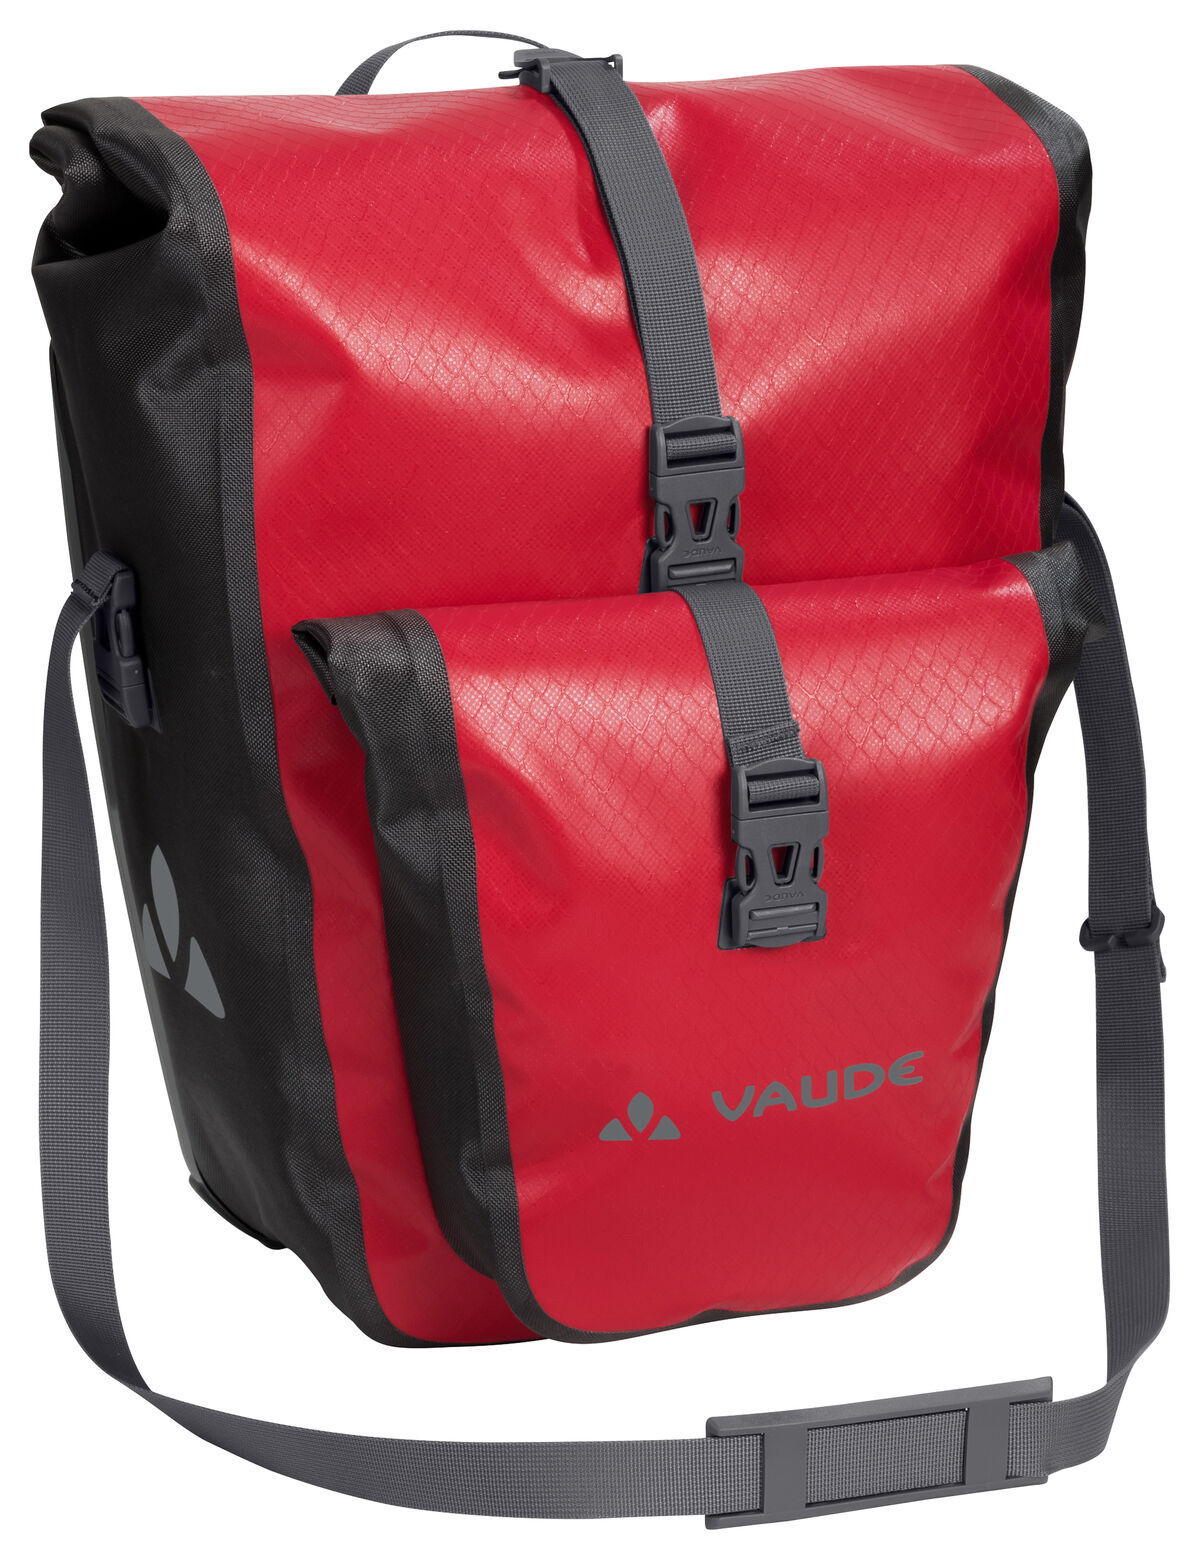 Vaude - Aqua Back Plus - Cycling bag